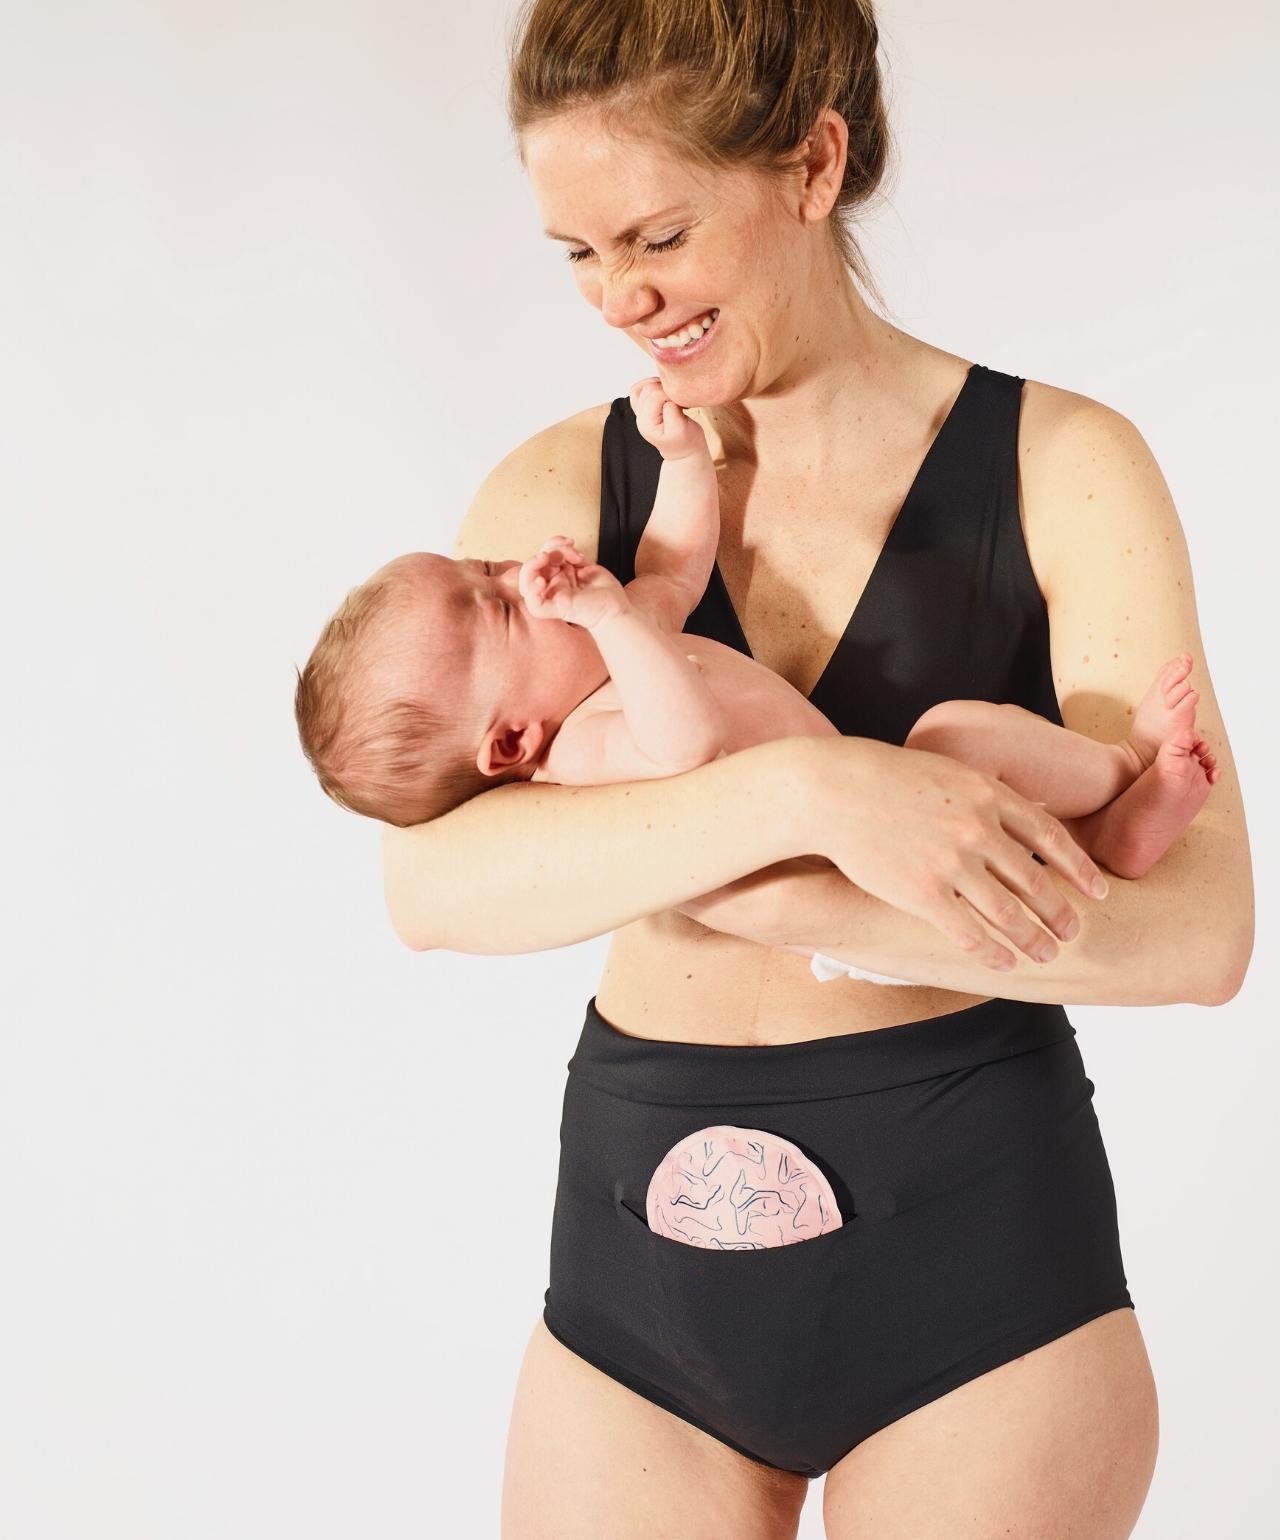 Woman in FourthWear Pospartum Bralette & Underwear holding baby